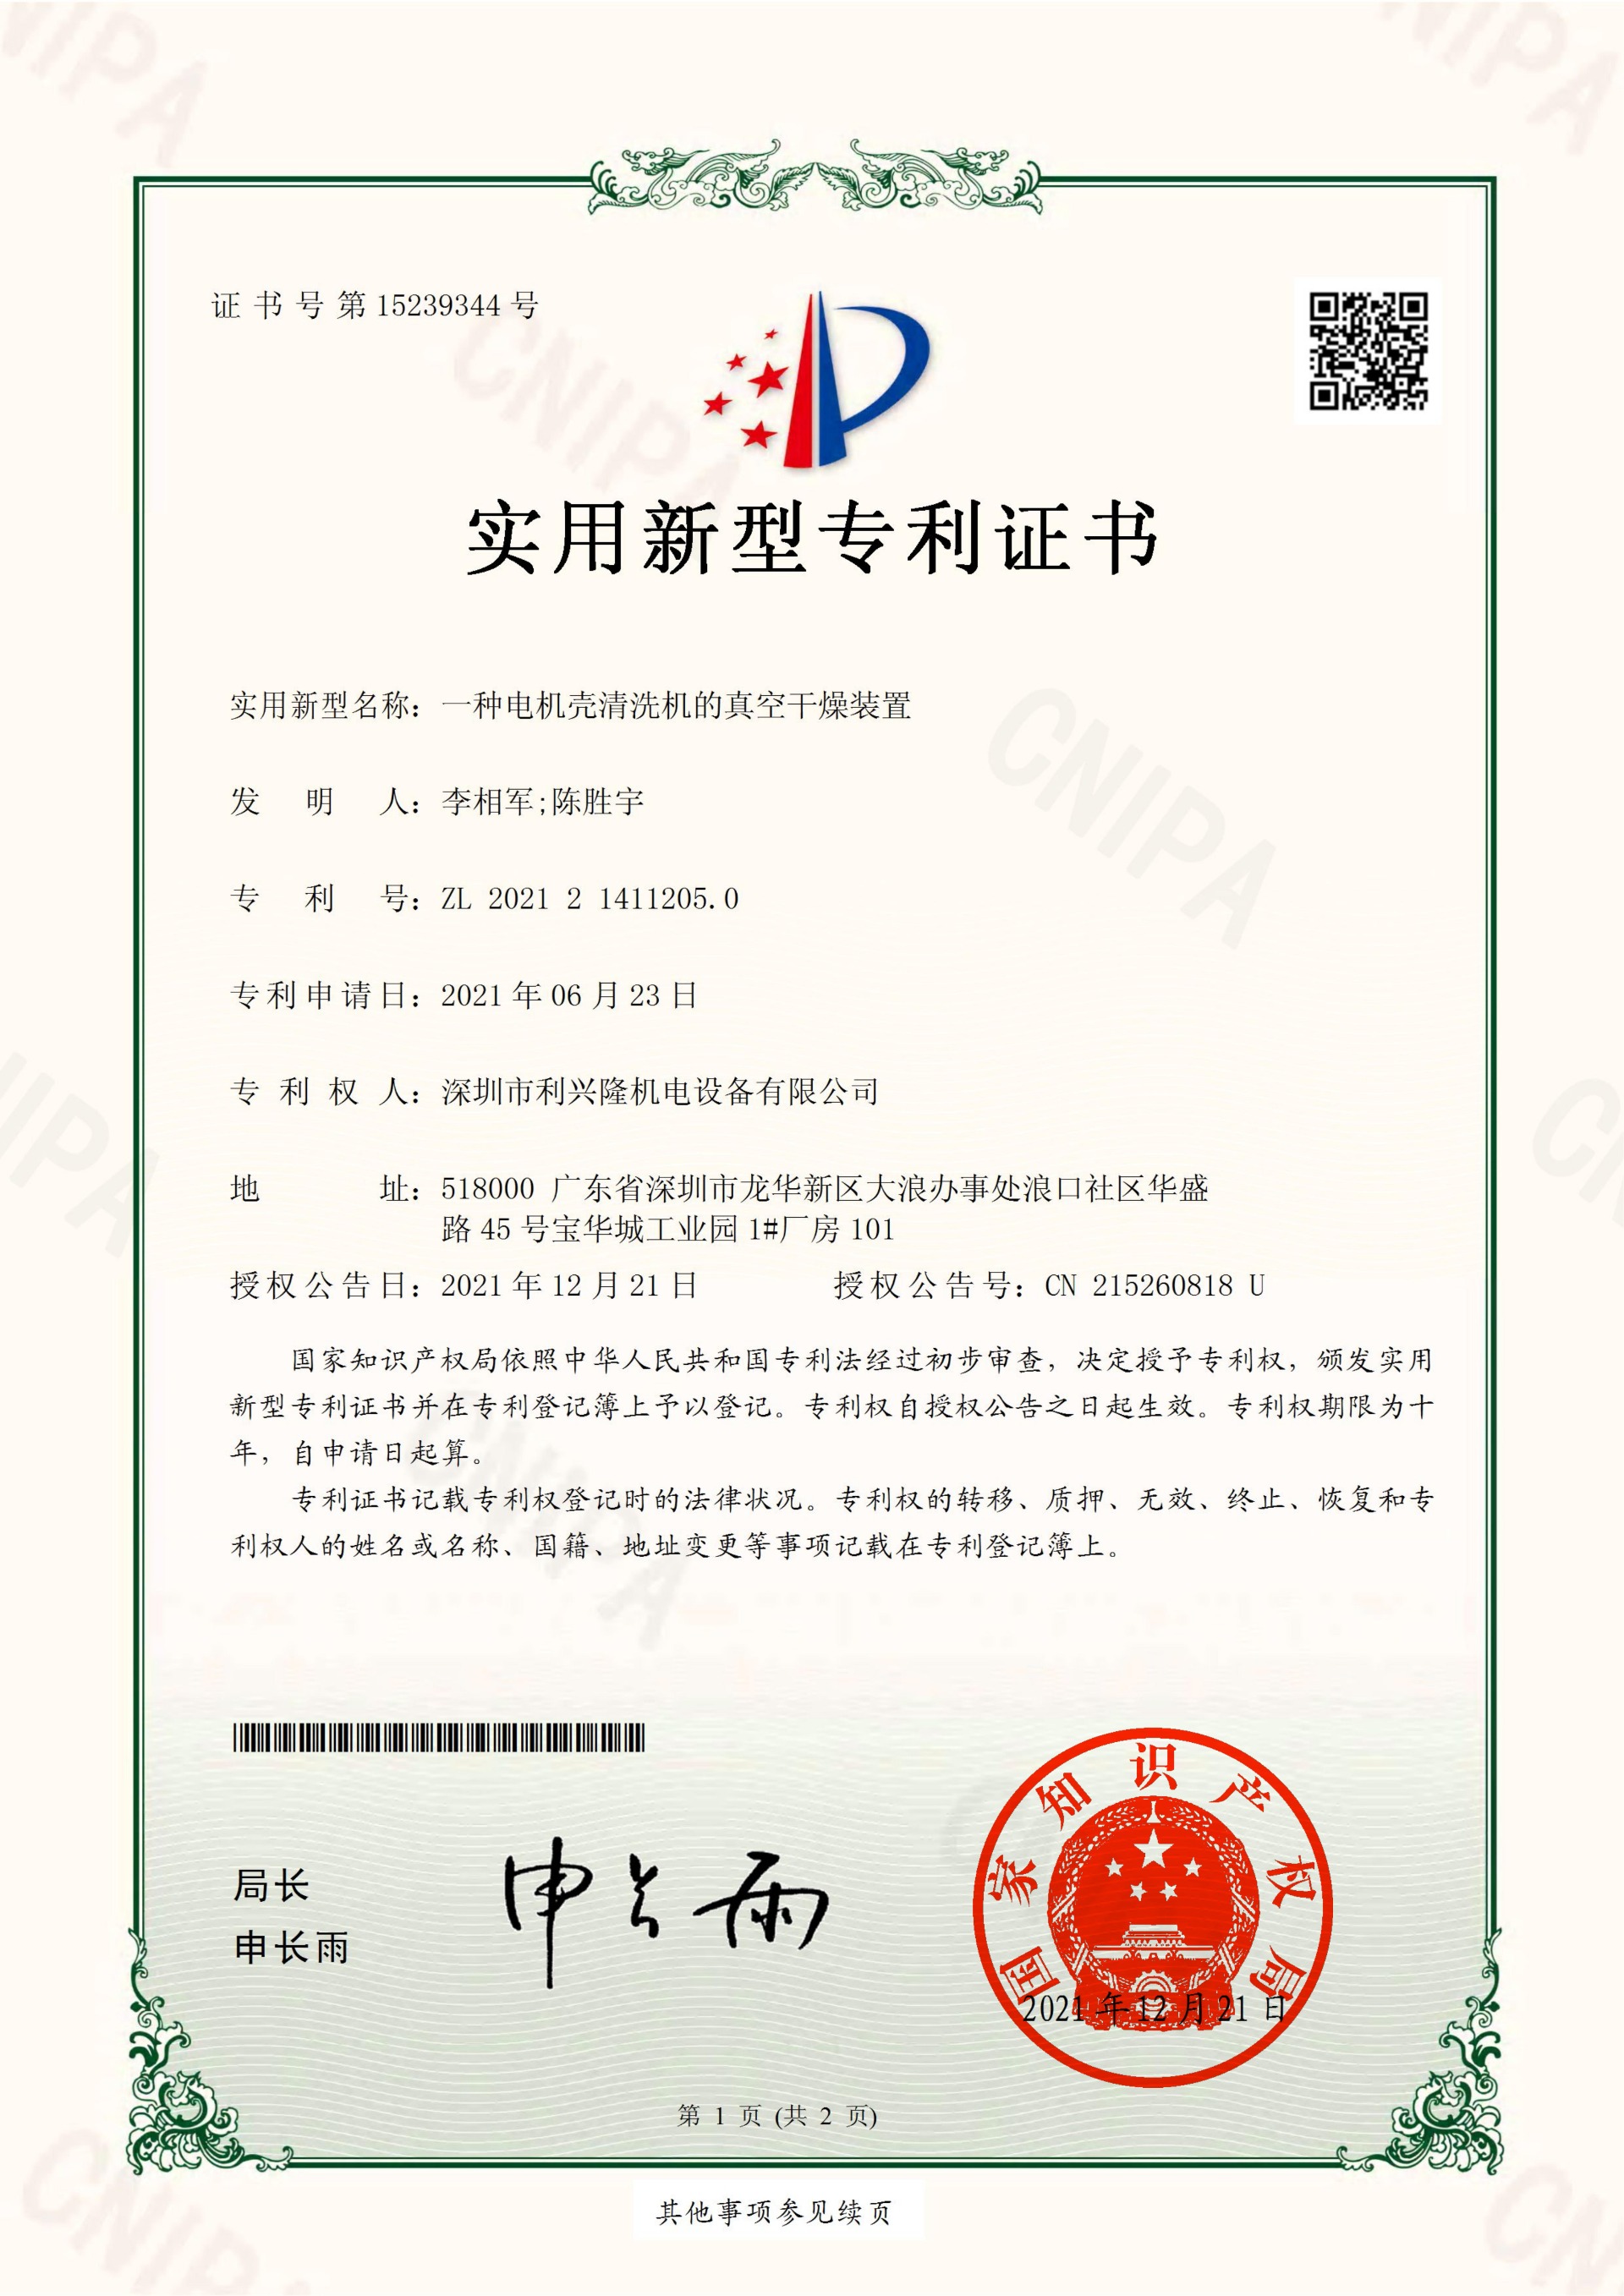 實用新型專利證書  一種電機殼清洗機的真空干燥裝置-深圳市利興隆機電設備有限公司_00